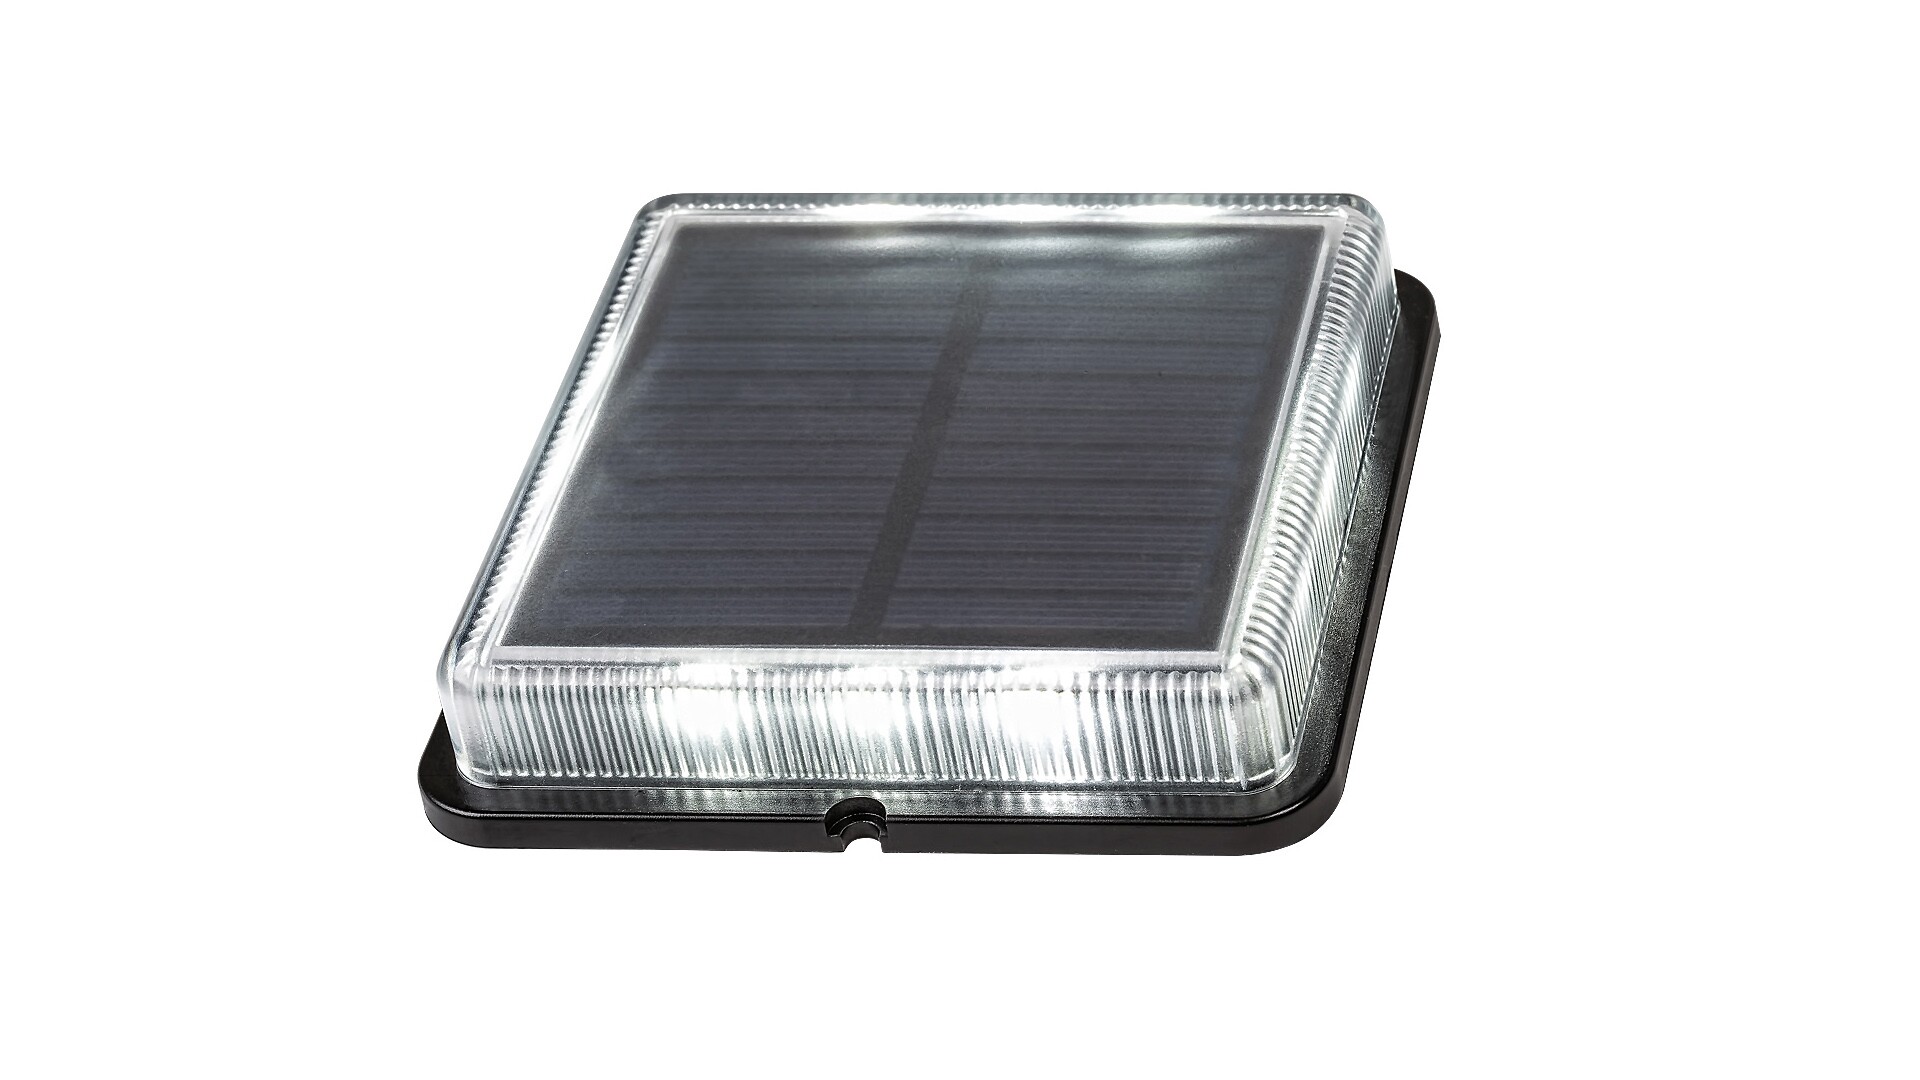 Solarleuchte Bilbao 8104, 0,2W, 4000K, Kunststoff, schwarz, neutralweiß, 11x11cm